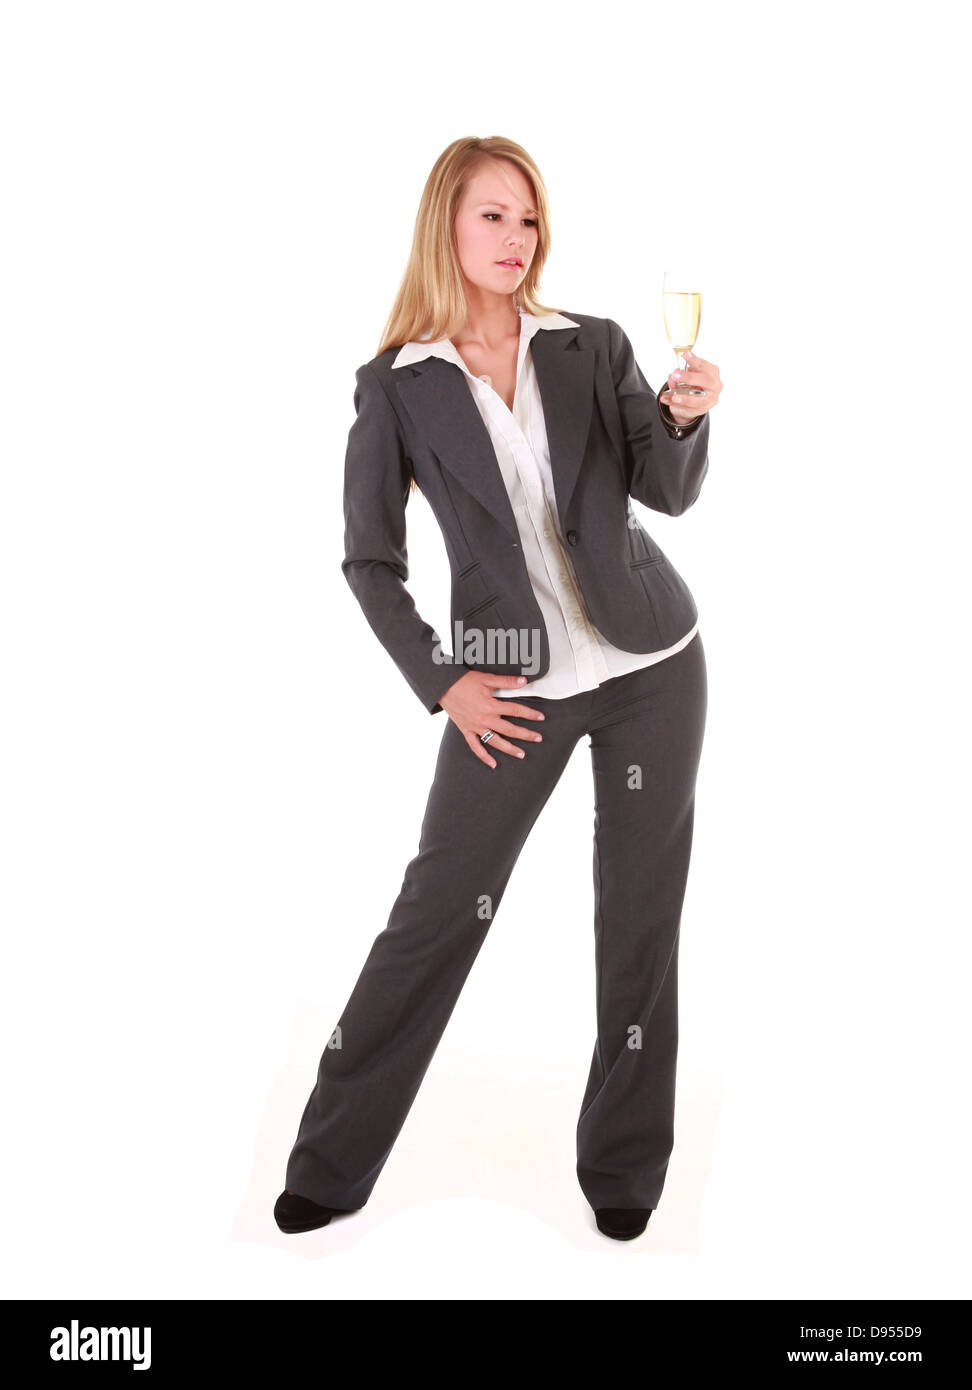 Eine schöne junge blonde Geschäftsfrau hält ein Glas Champagner. Sie ist in einem grauen Suite und Jacke gekleidet. Stockfoto